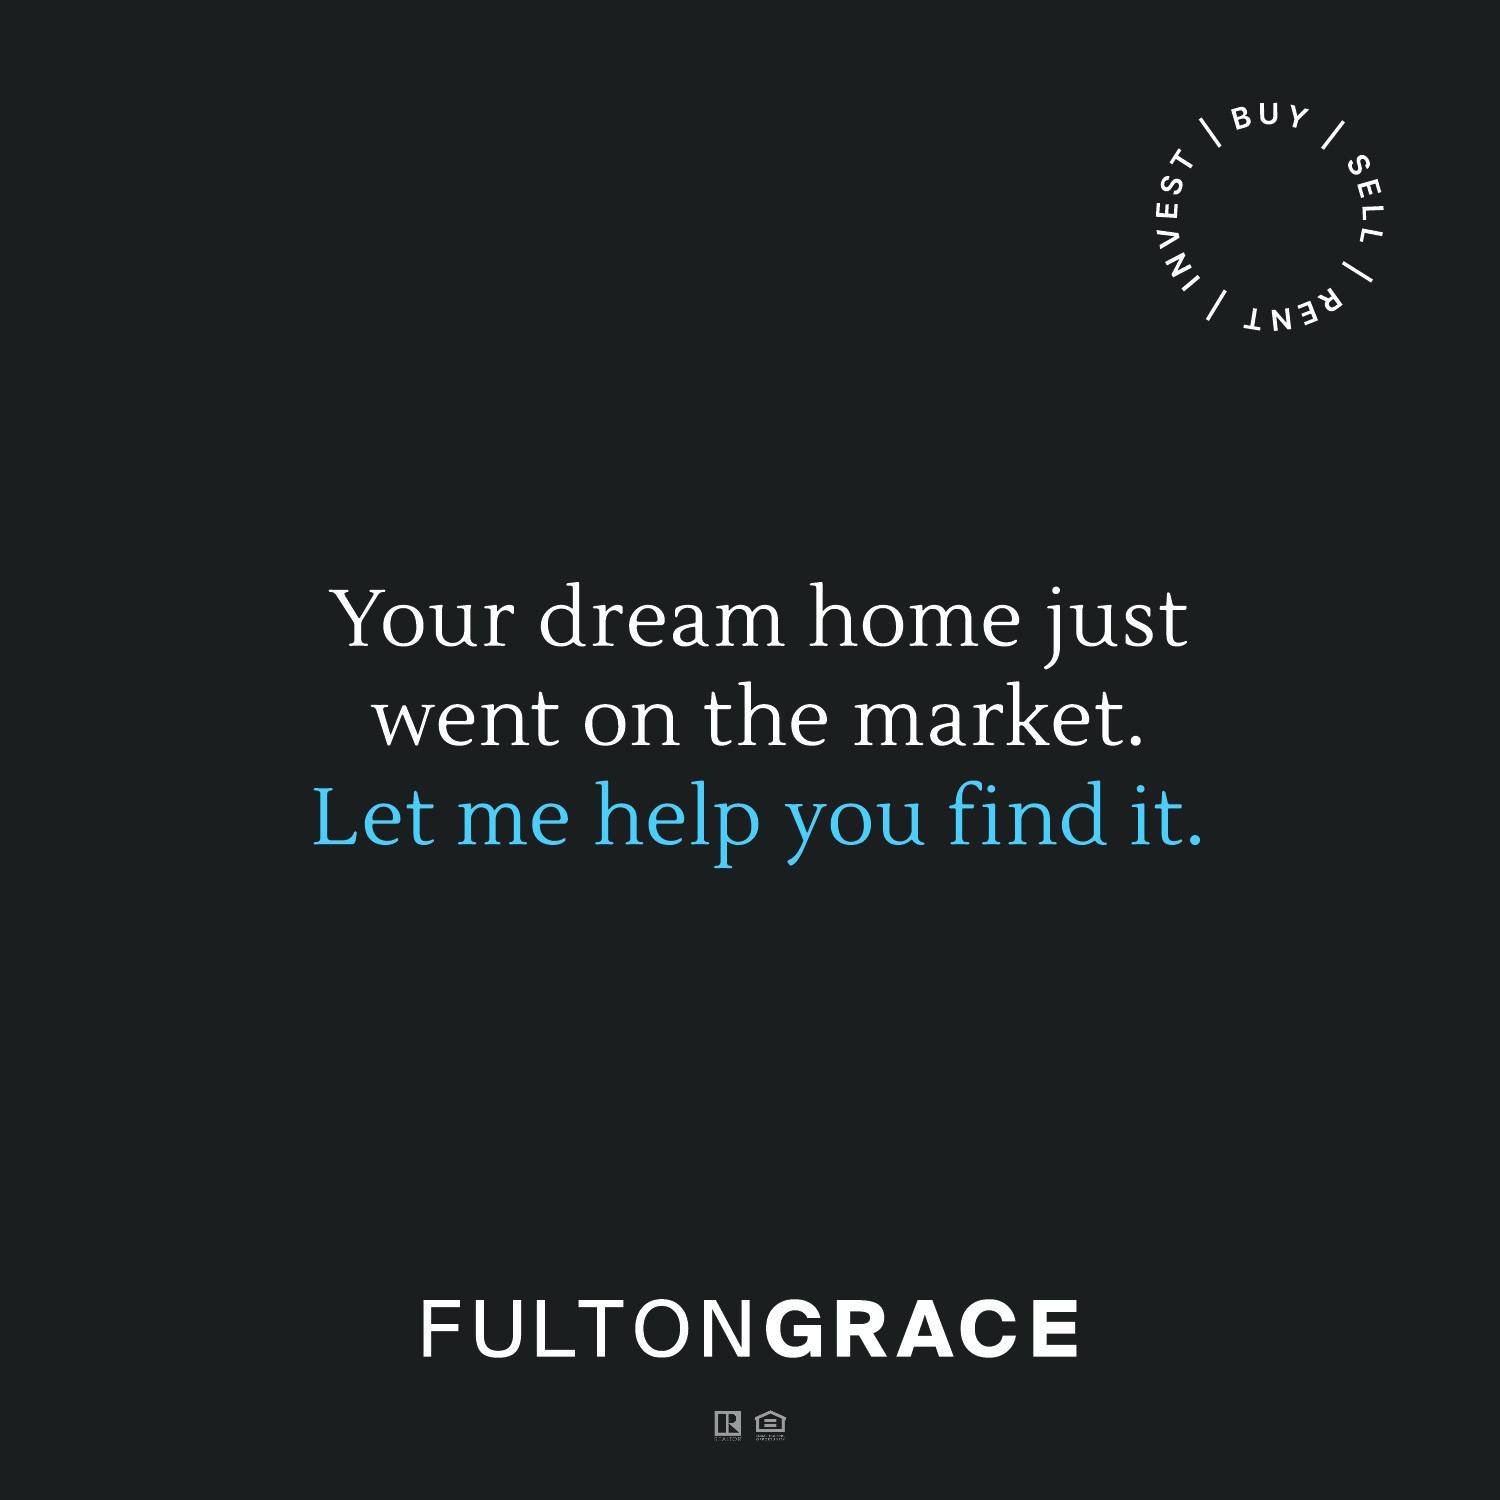 🏠🏜🗝
#jcorealtor 
#dreamhome 
#buysellrentinvest 
#fultongraceaz
#fultongrace